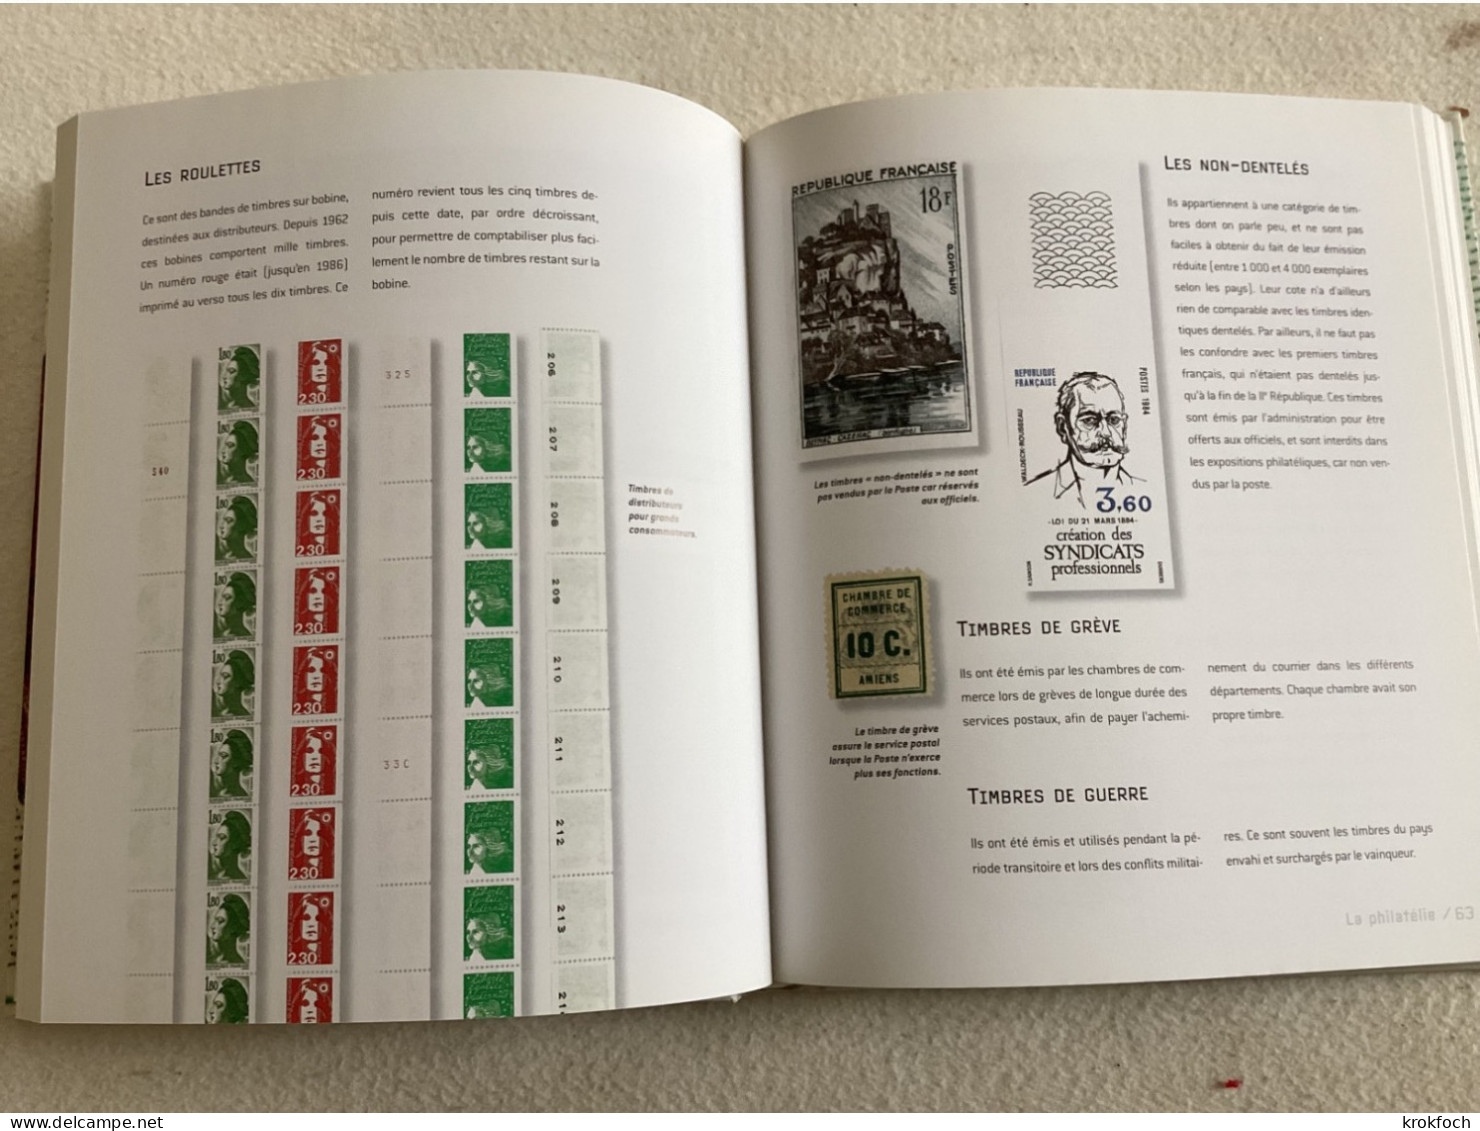 La Philatélie - Album Relié & Cartonné 180 P - 2005 - Vulgarisation Poussée - Nb Items & Illustration - Manuali